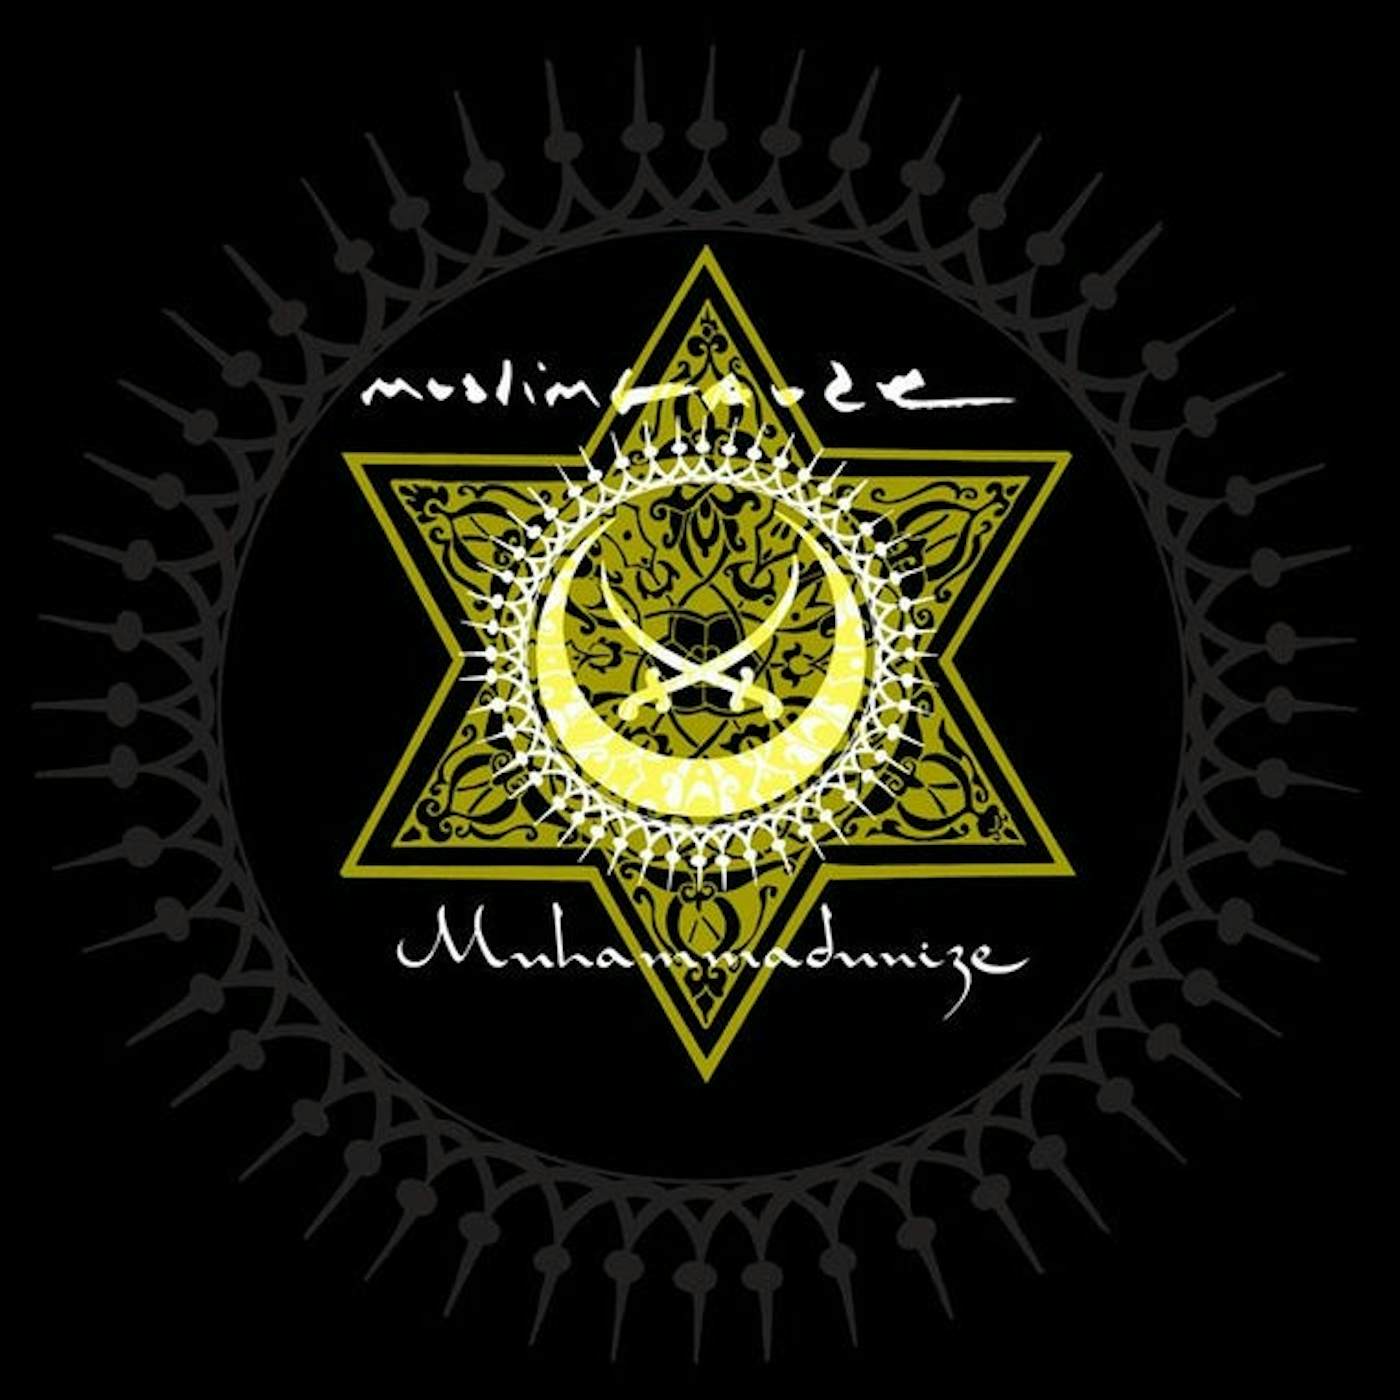 Muslimgauze Muhammadunize Vinyl Record